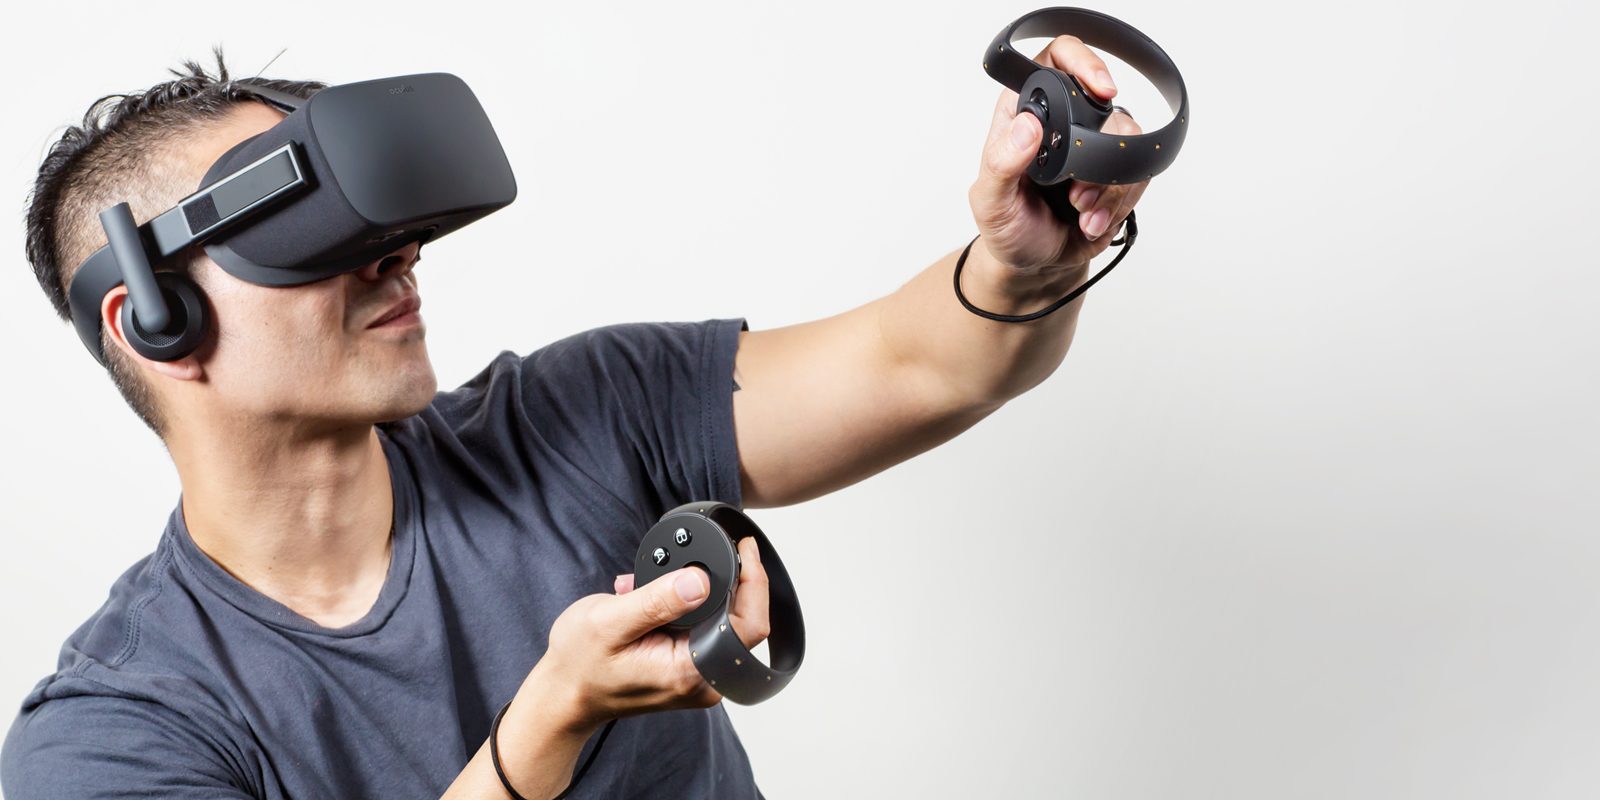 Toma nota, amigo virtual: Oculus Rift llegará a España el 20 de septiembre